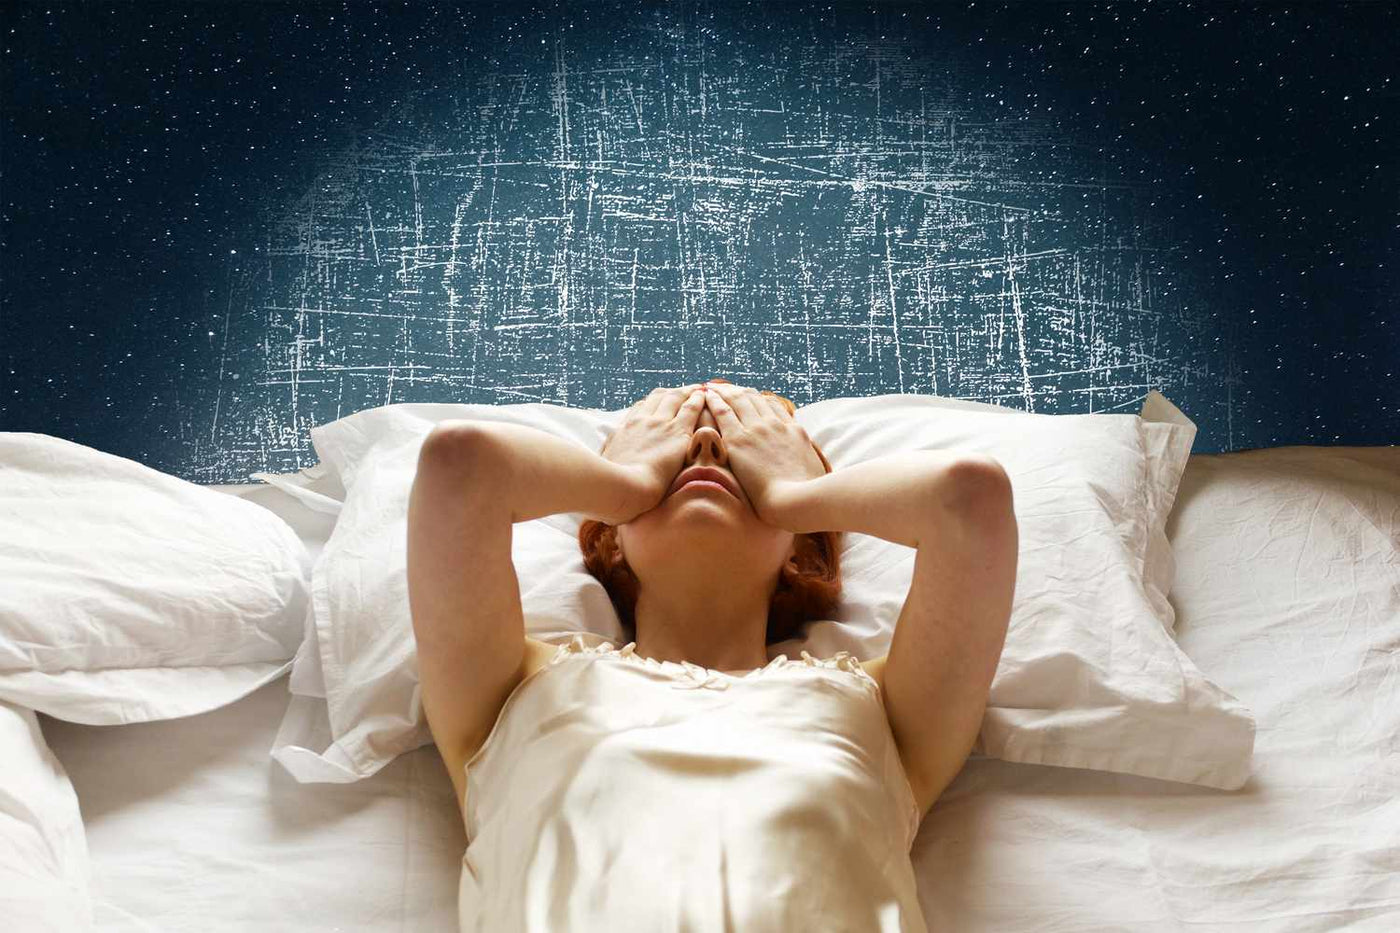 Τι Προκαλεί τον Ανήσυχο Ύπνο (και τι μπορείς να κάνεις γι' αυτό);